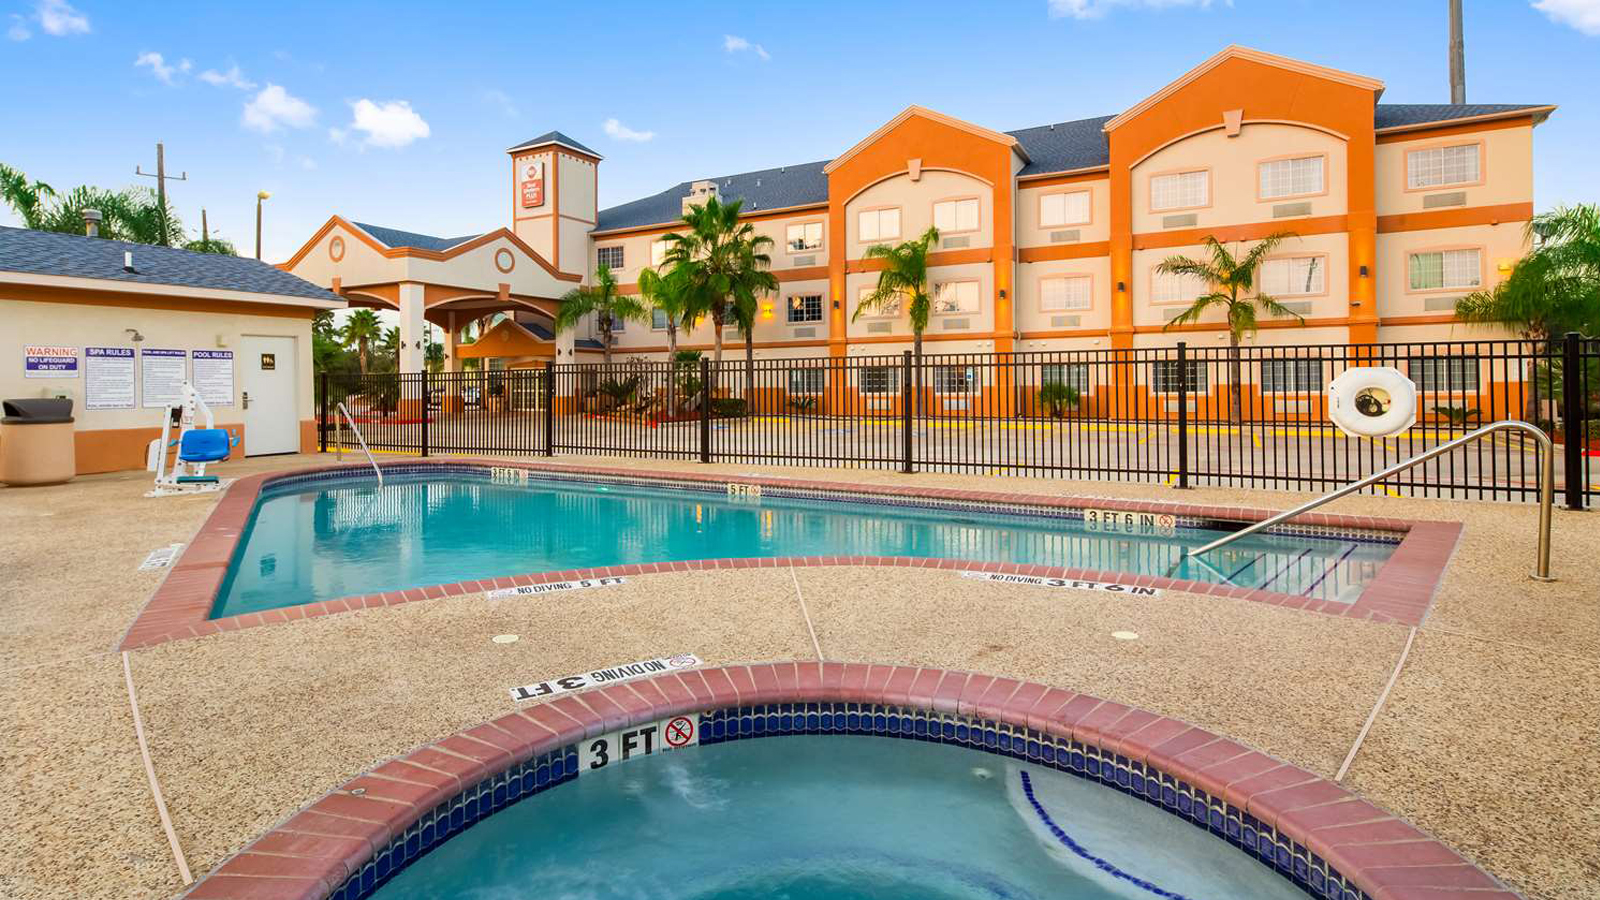 Hotel Texas Outdoor Pool